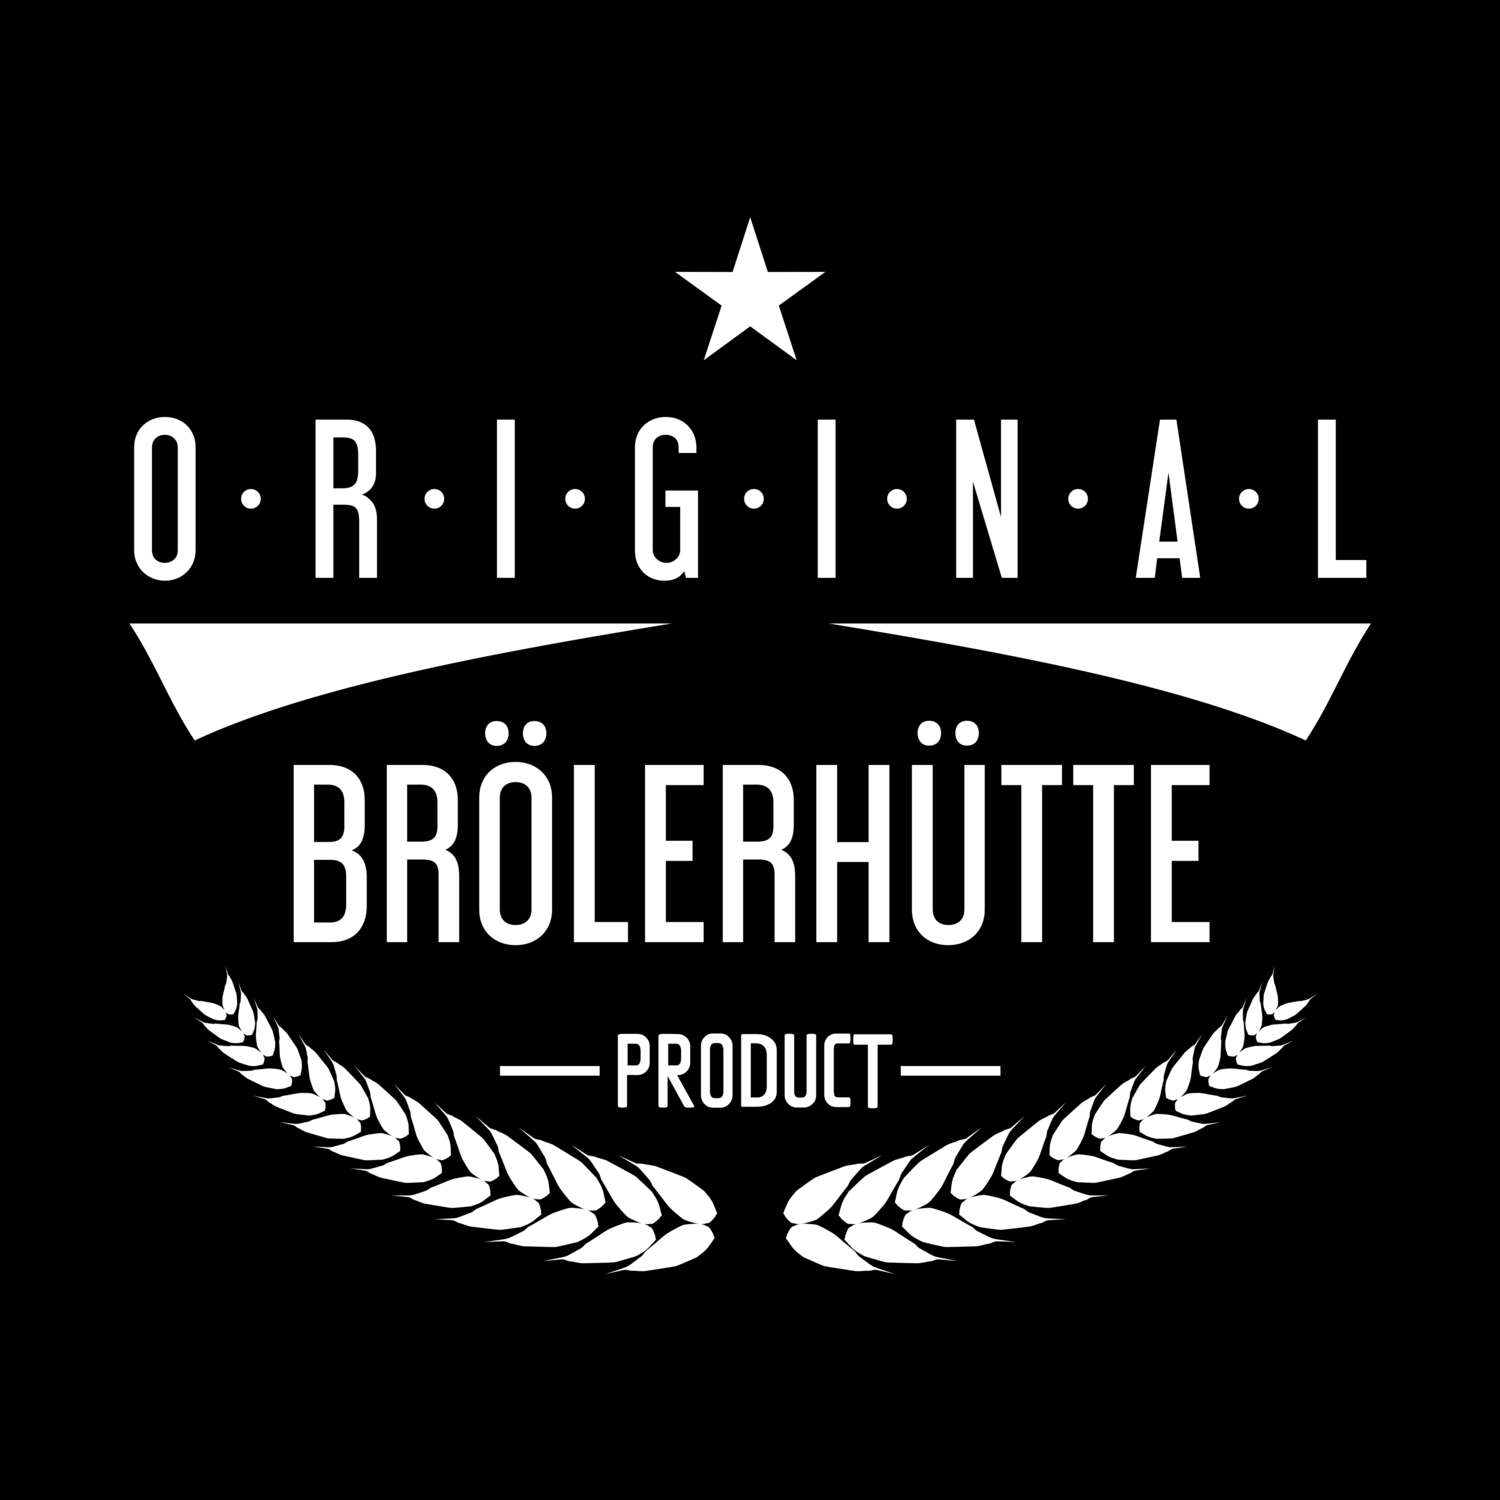 Brölerhütte T-Shirt »Original Product«